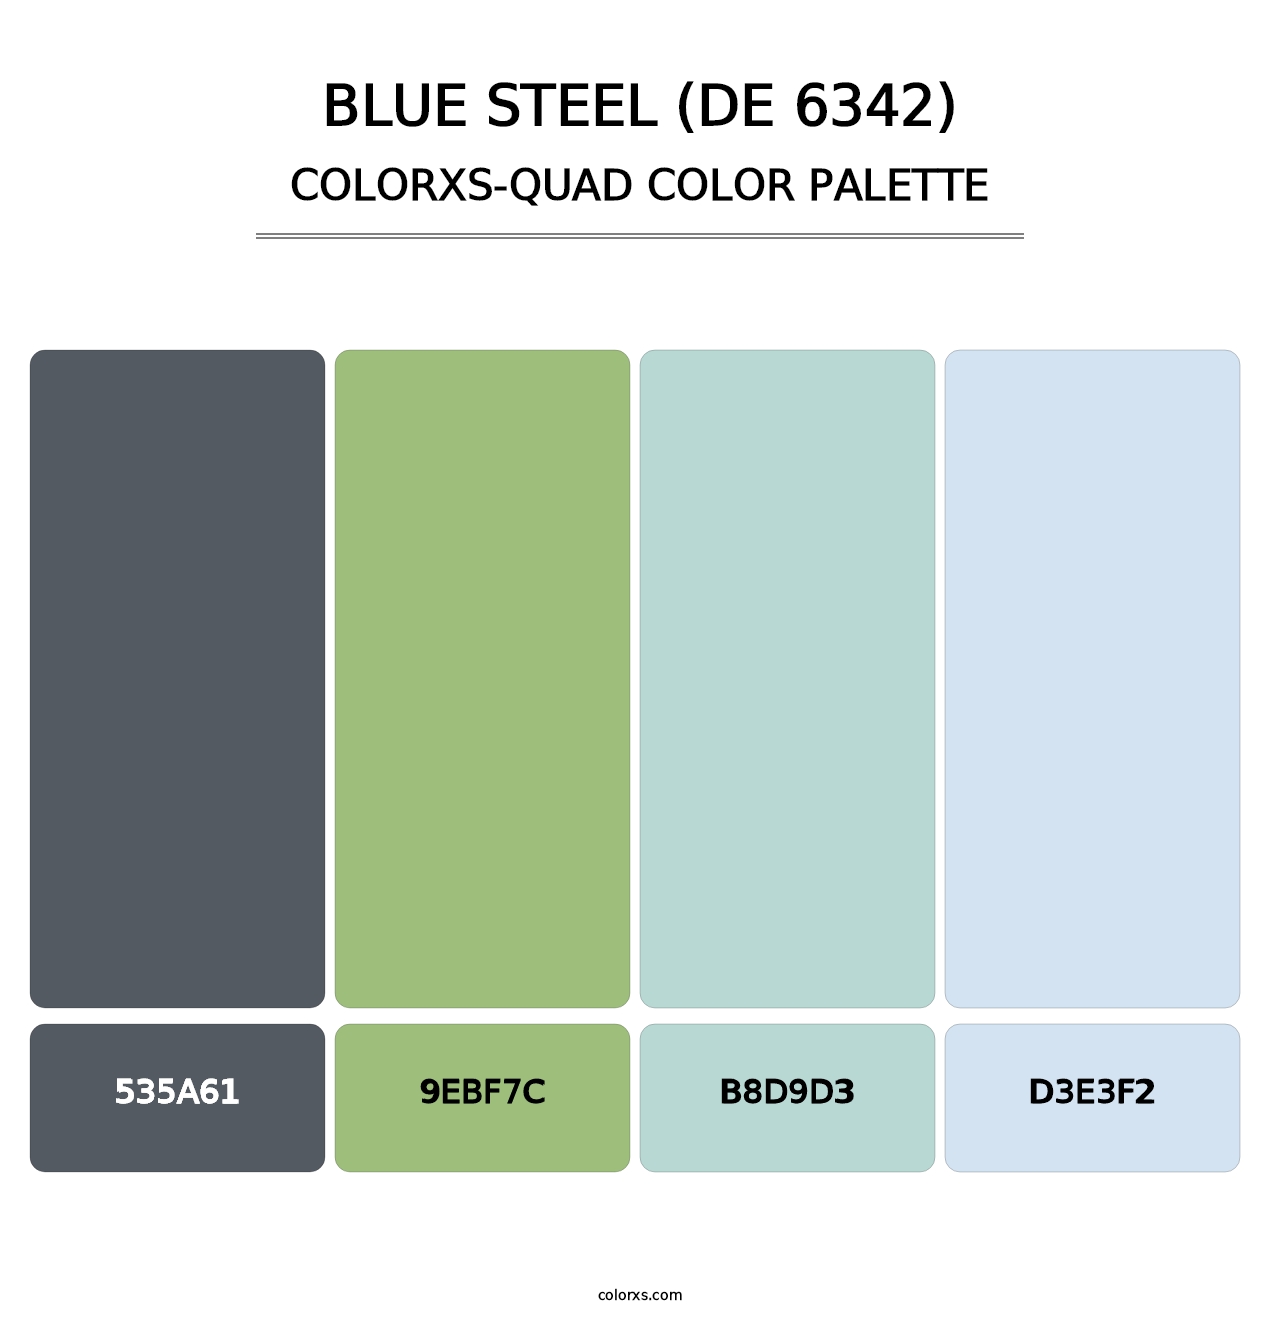 Blue Steel (DE 6342) - Colorxs Quad Palette